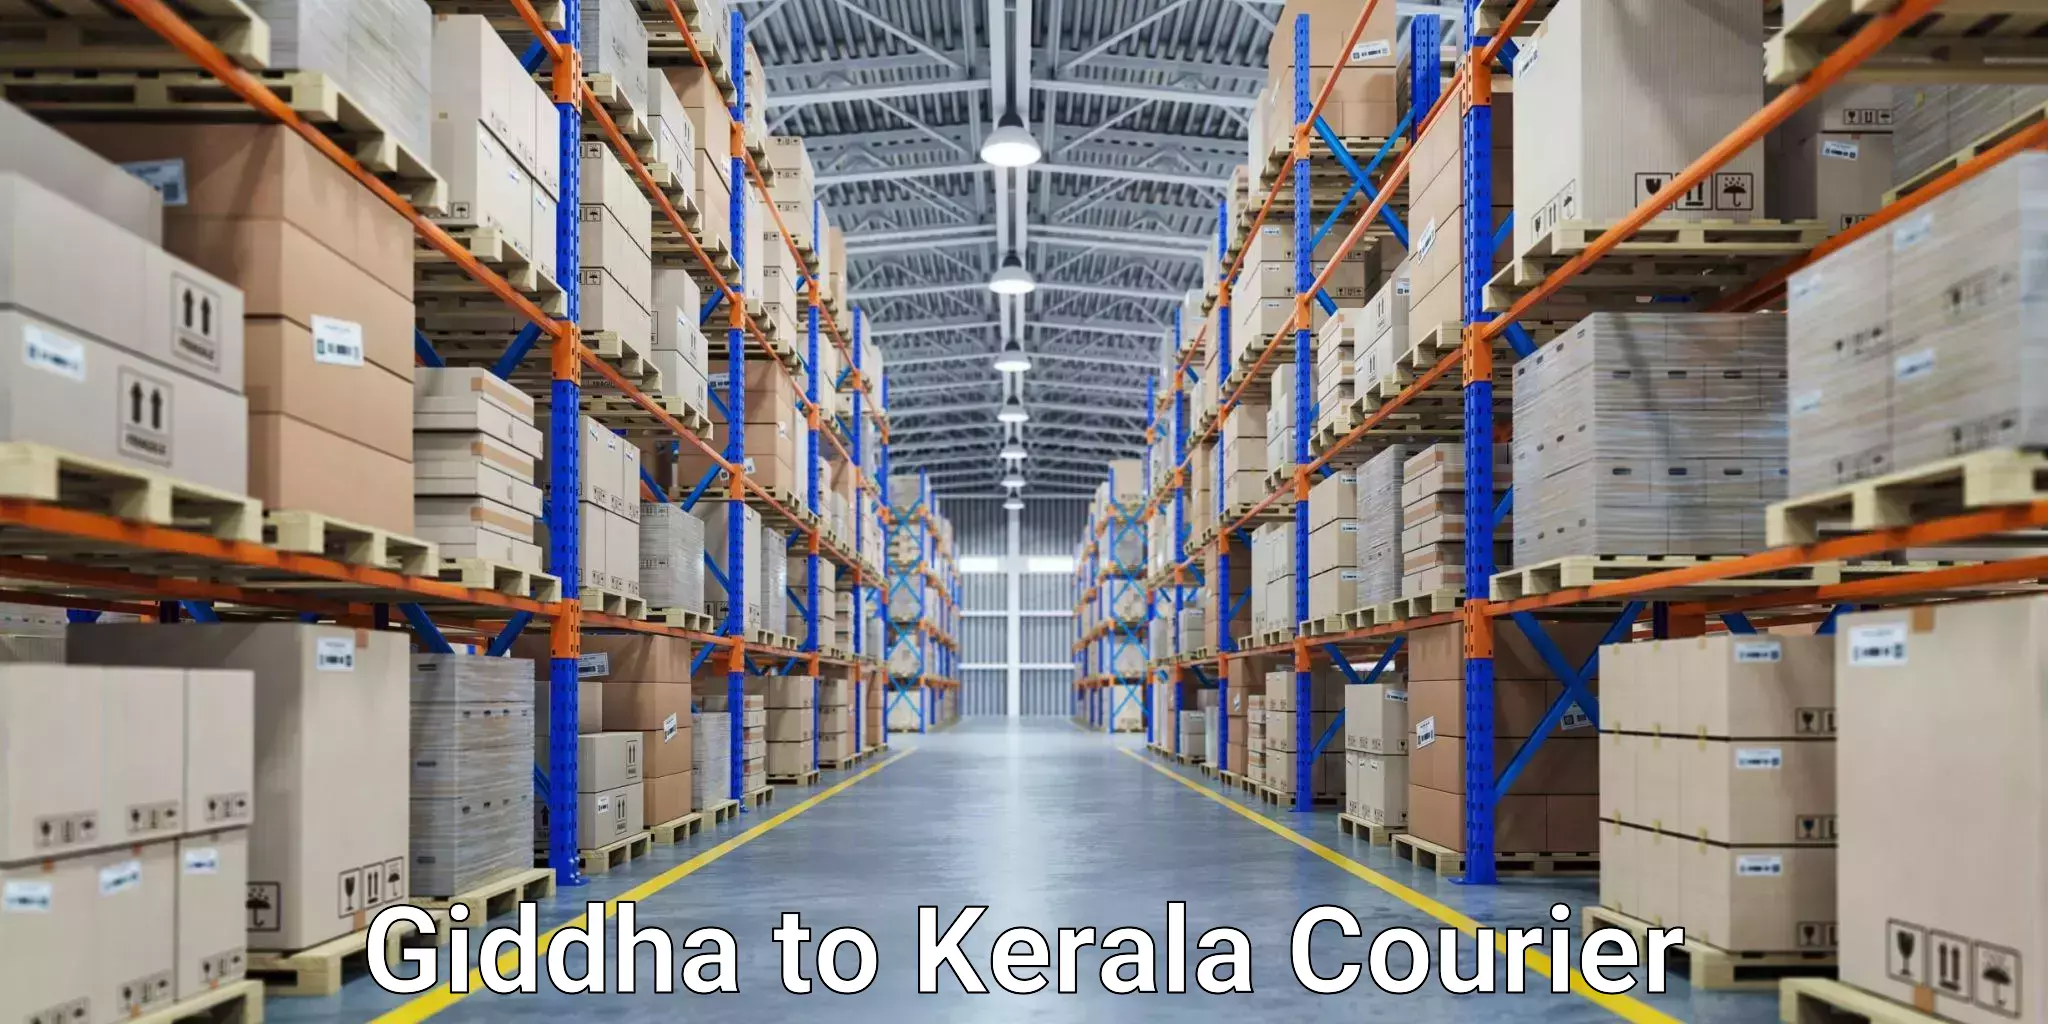 Multi-modal transport in Giddha to Kerala